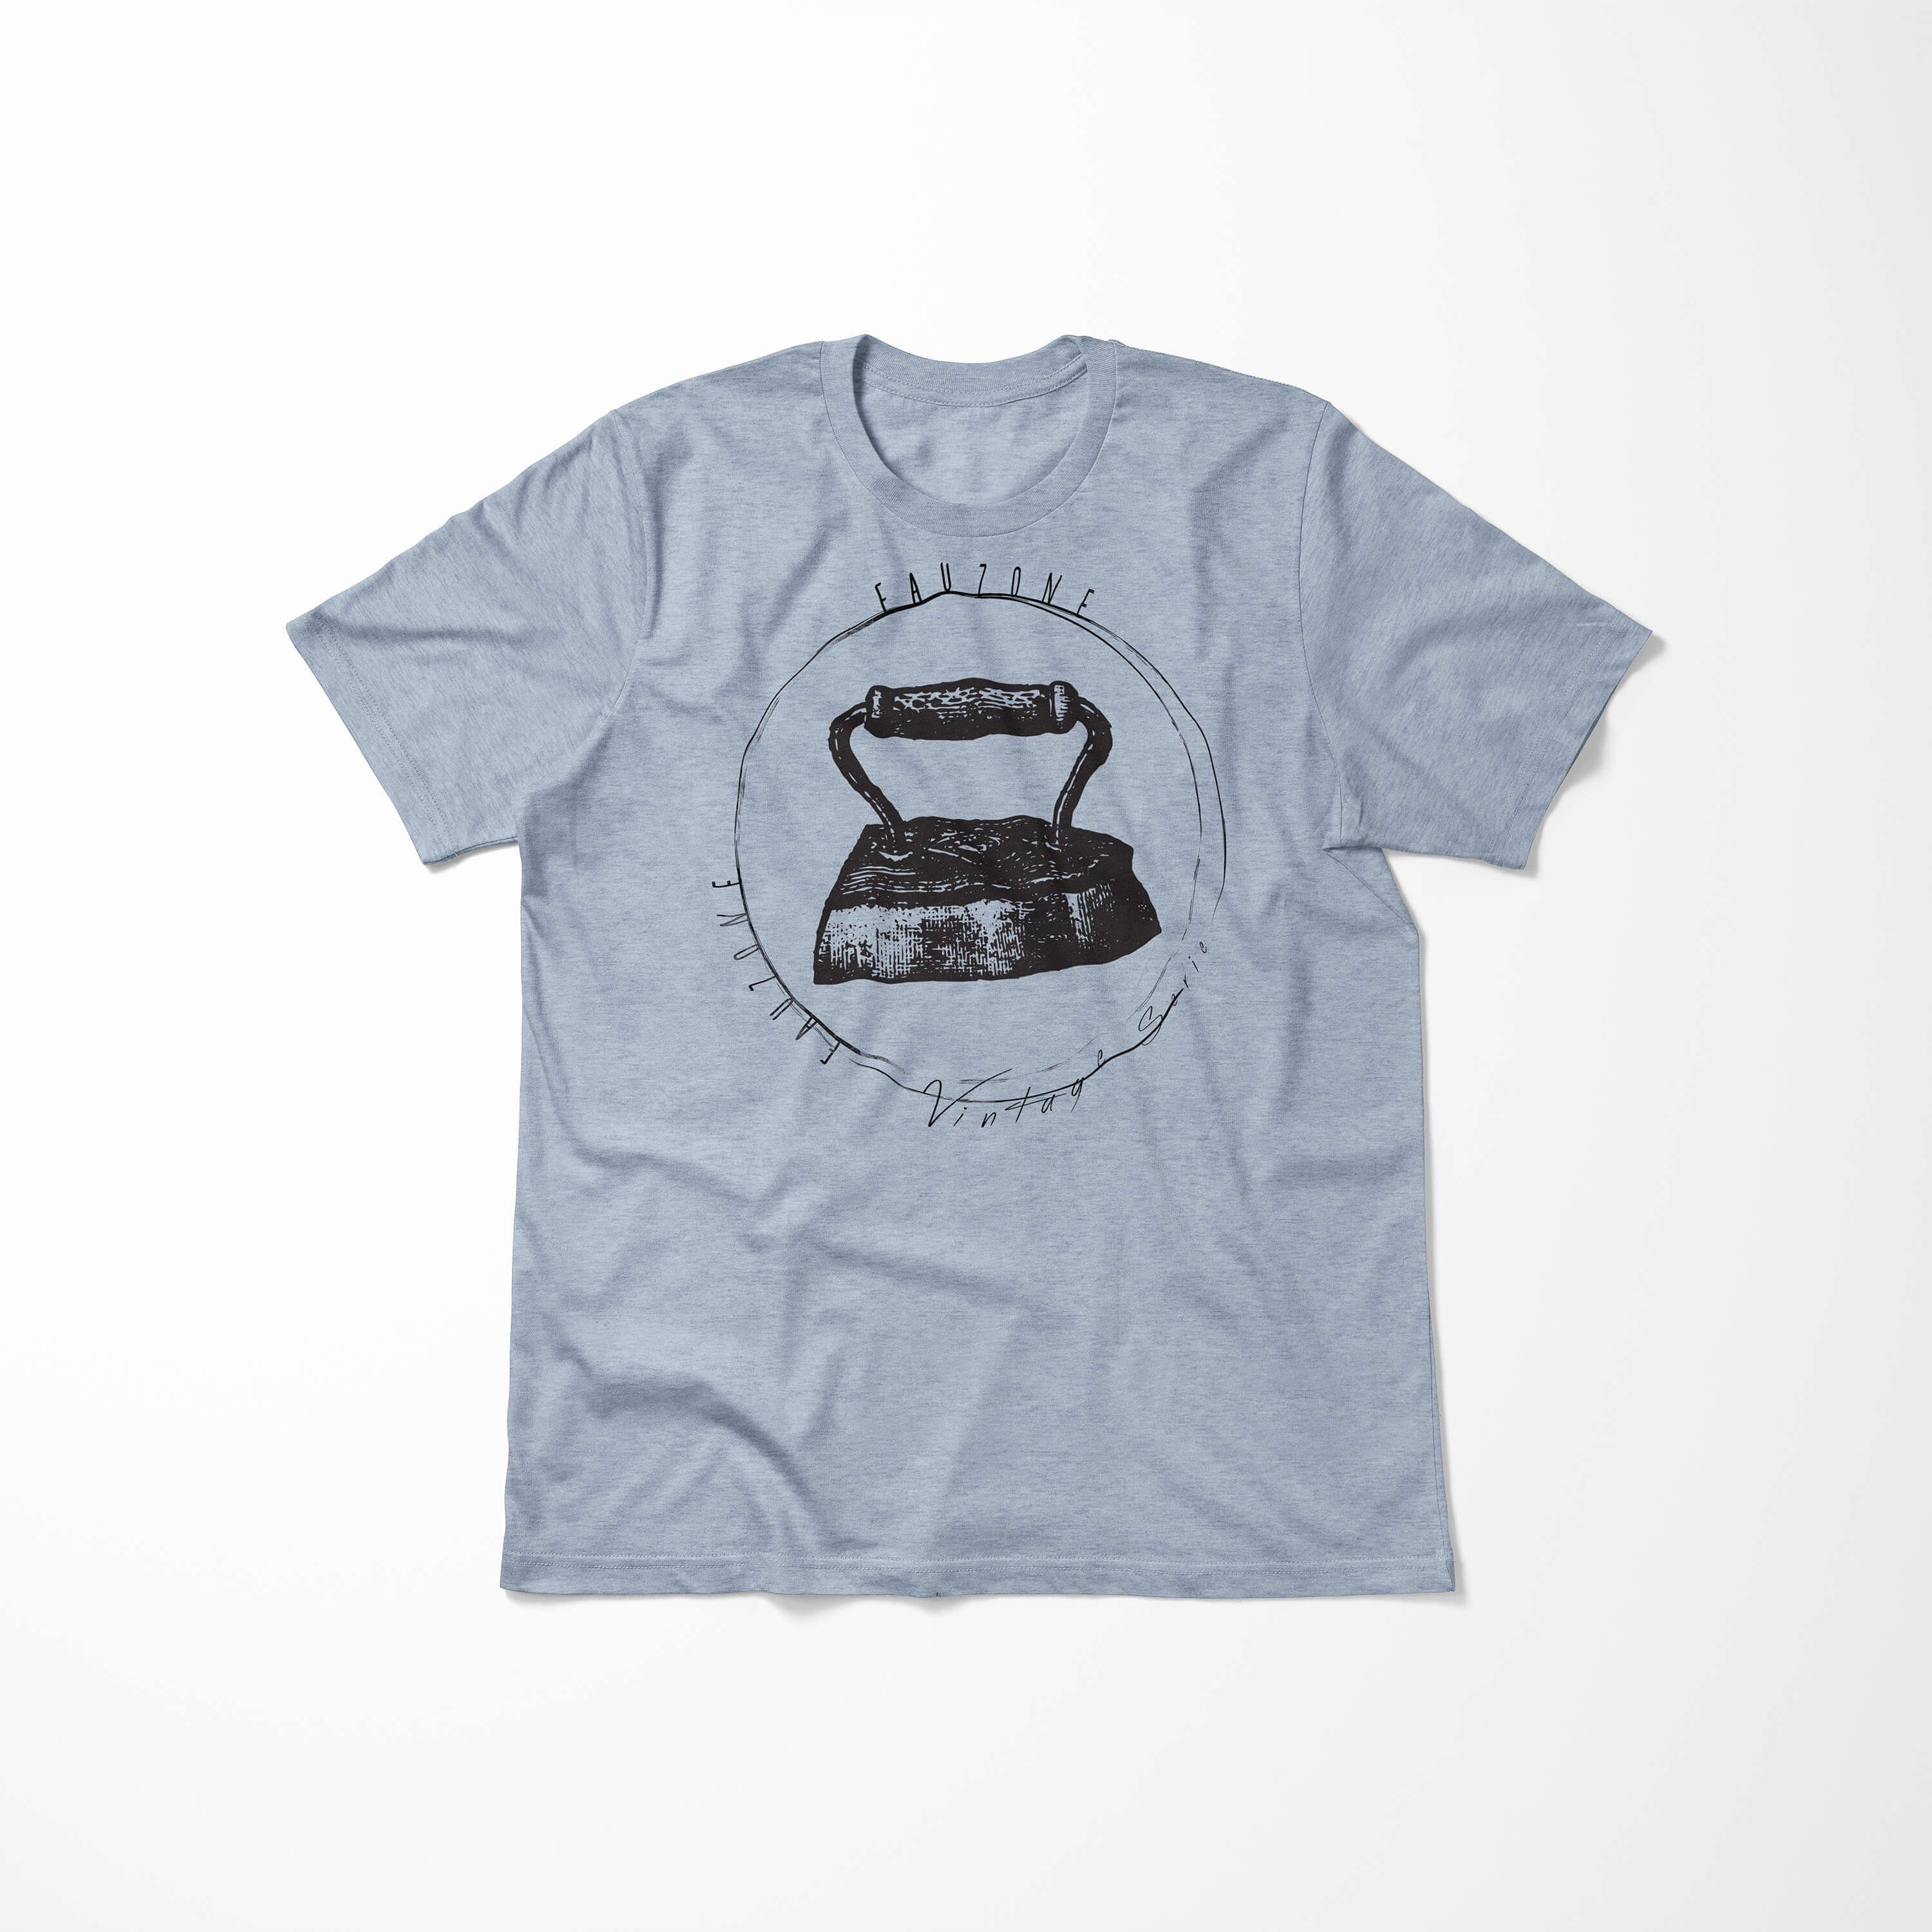 Sinus Art T-Shirt Vintage Herren Bügeleisen Stonewash Denim T-Shirt